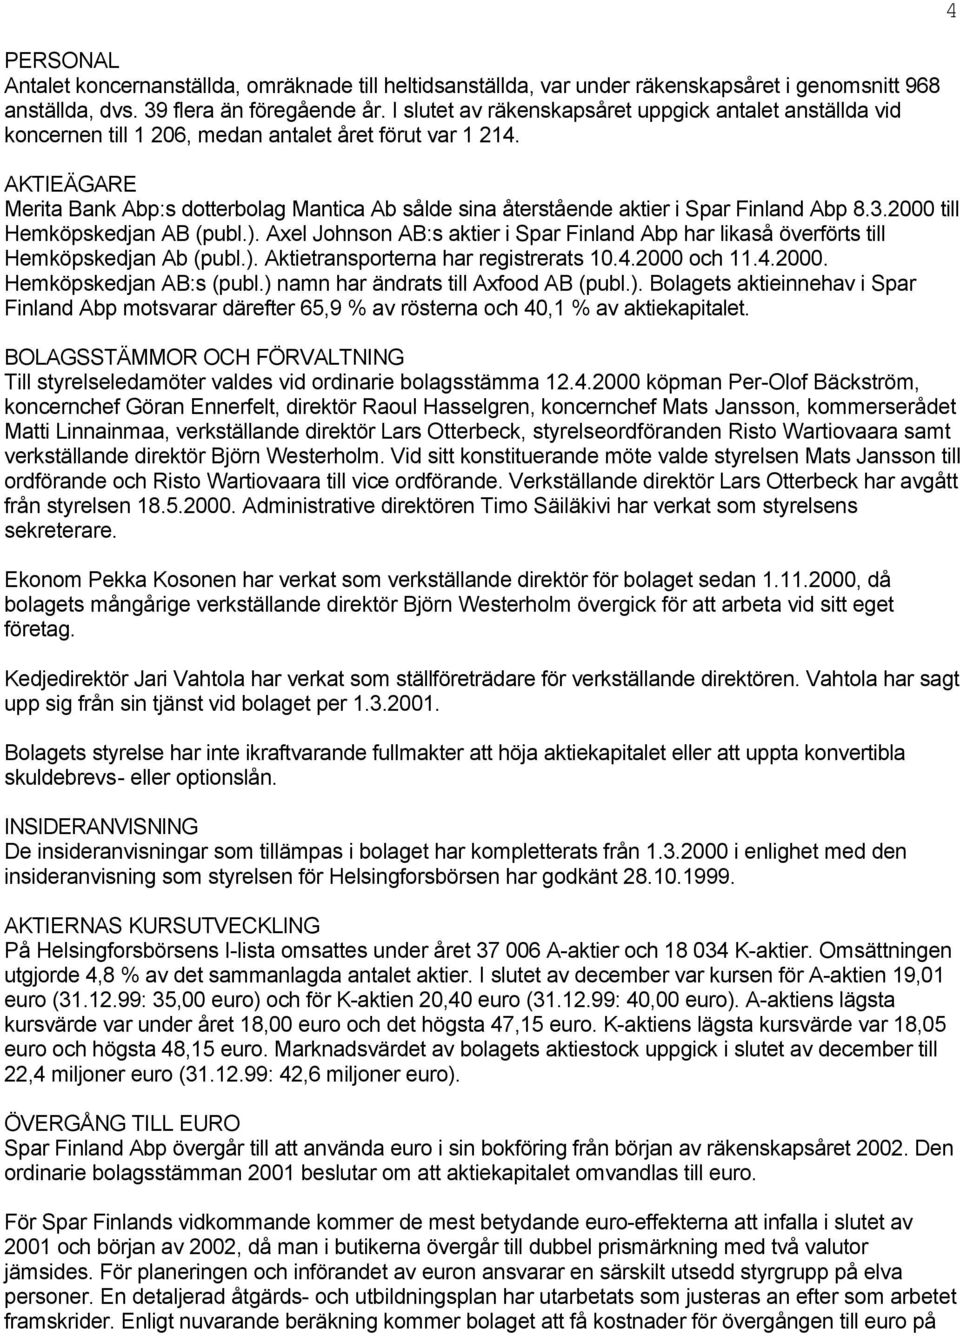 AKTIEÄGARE Merita Bank Abp:s dotterbolag Mantica Ab sålde sina återstående aktier i Spar Finland Abp 8.3.2000 till Hemköpskedjan AB (publ.).